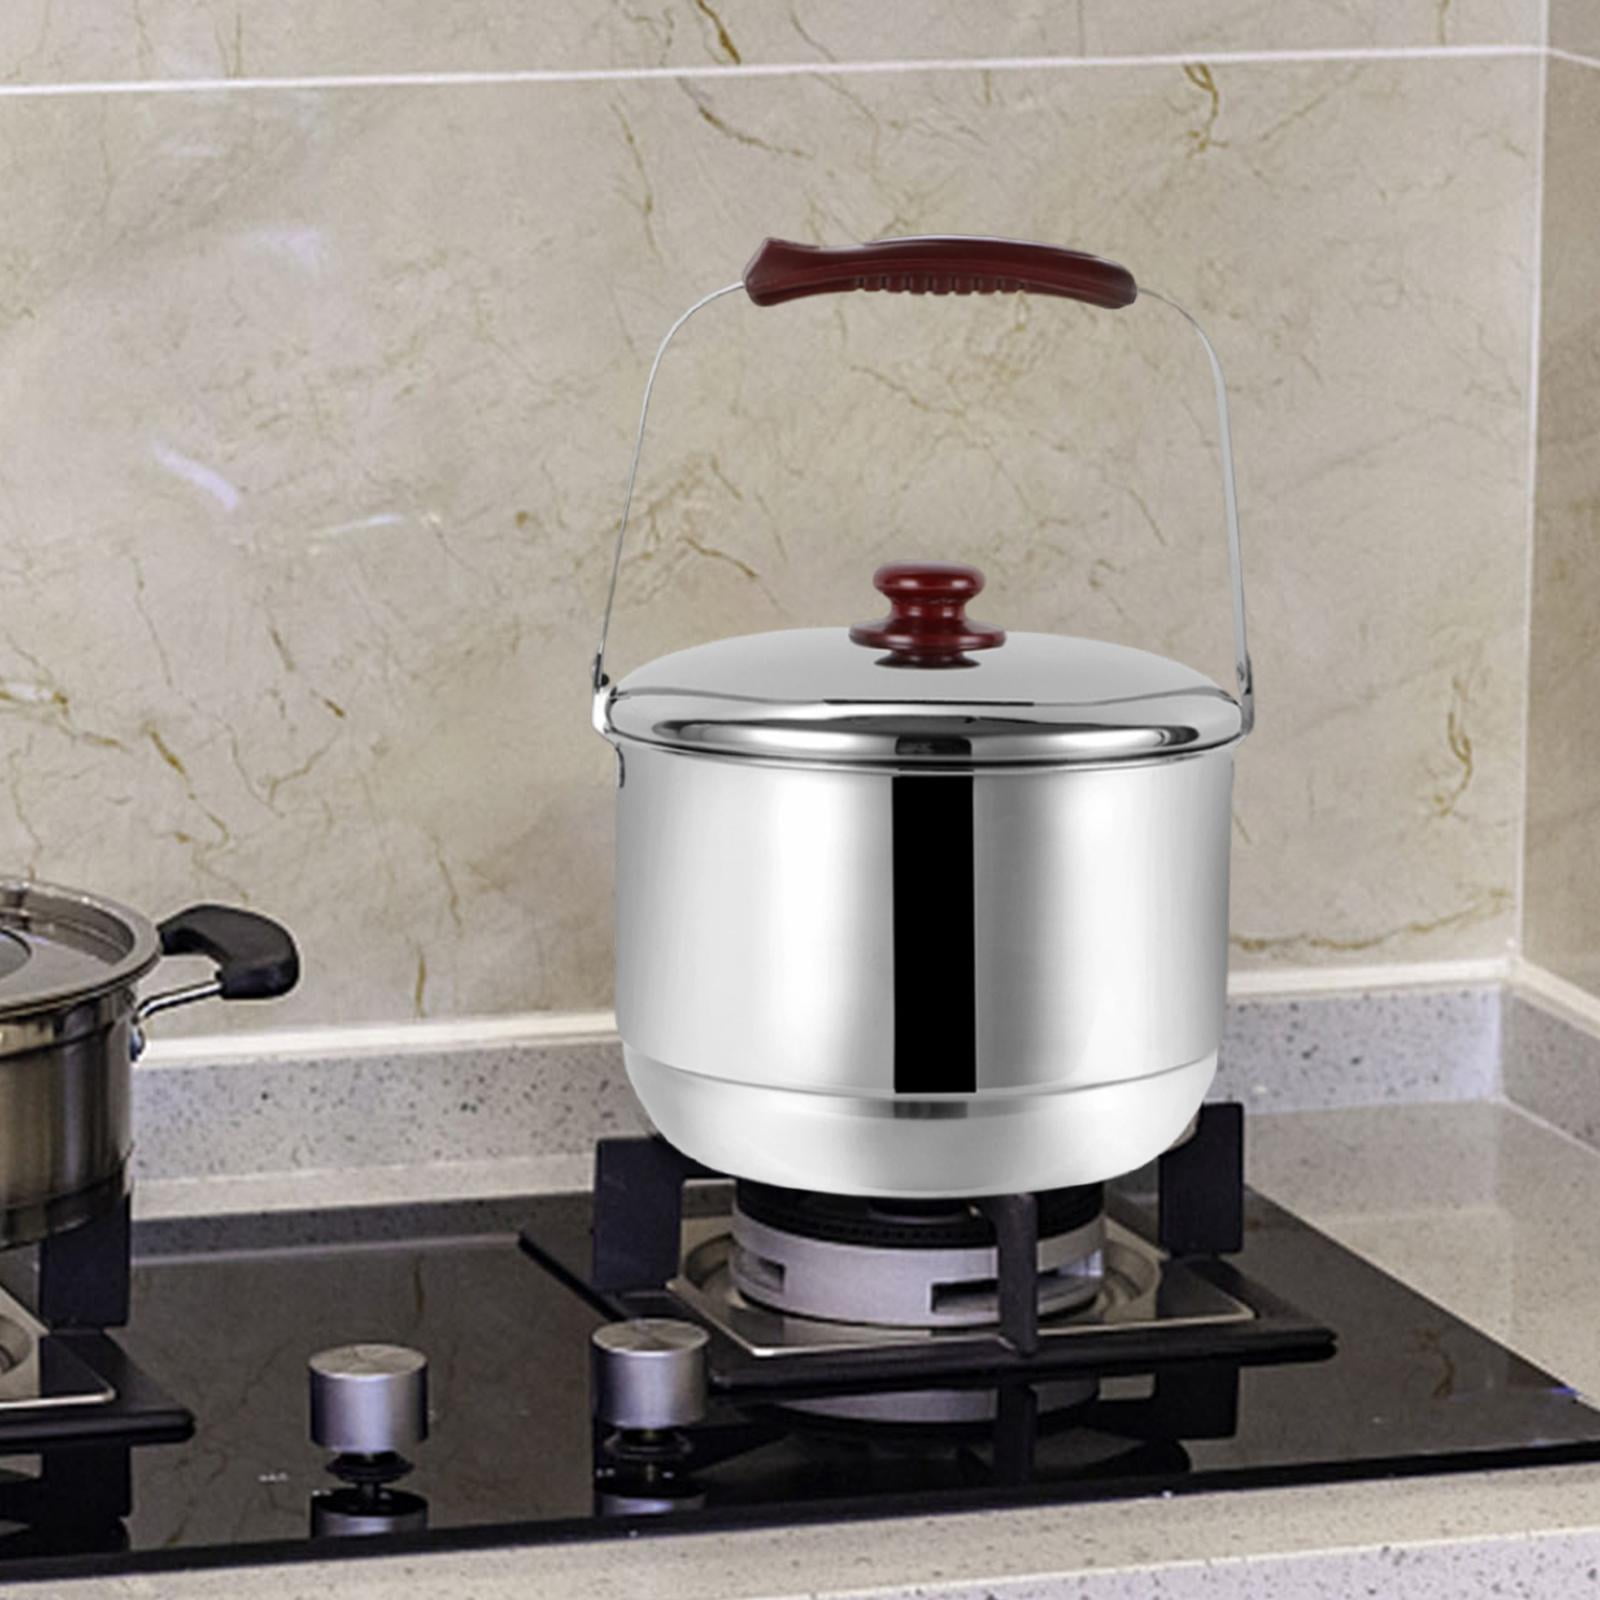 316 stainless steel steam pot 40cm steamer pot Home appliance 4 layers steamer  cooker Soup pots for cooking Hotpot cookware set - AliExpress